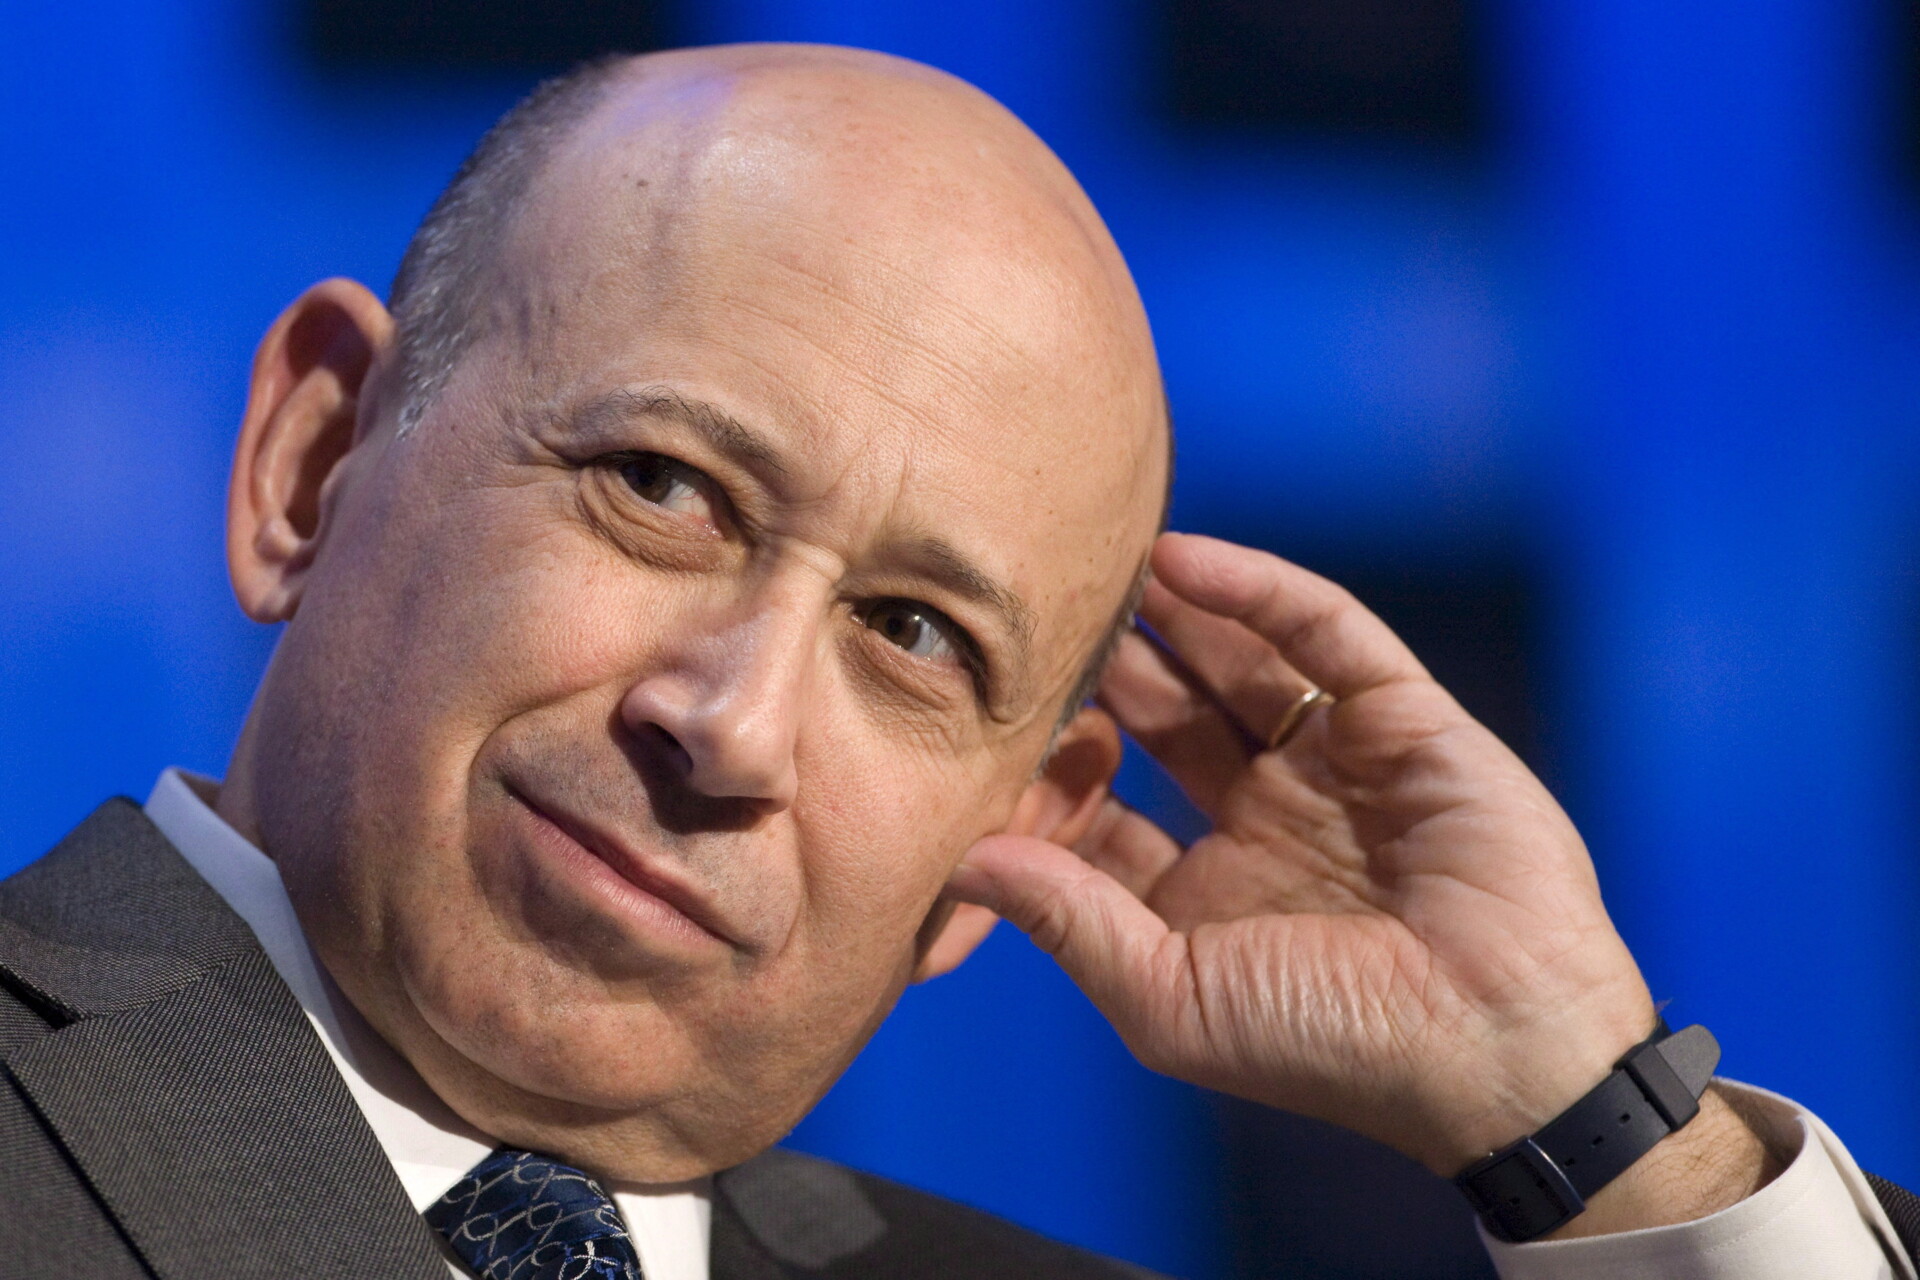 O CEO της Goldman Sachs David Solomon © EPA/ALESSANDRO DELLA VALLE